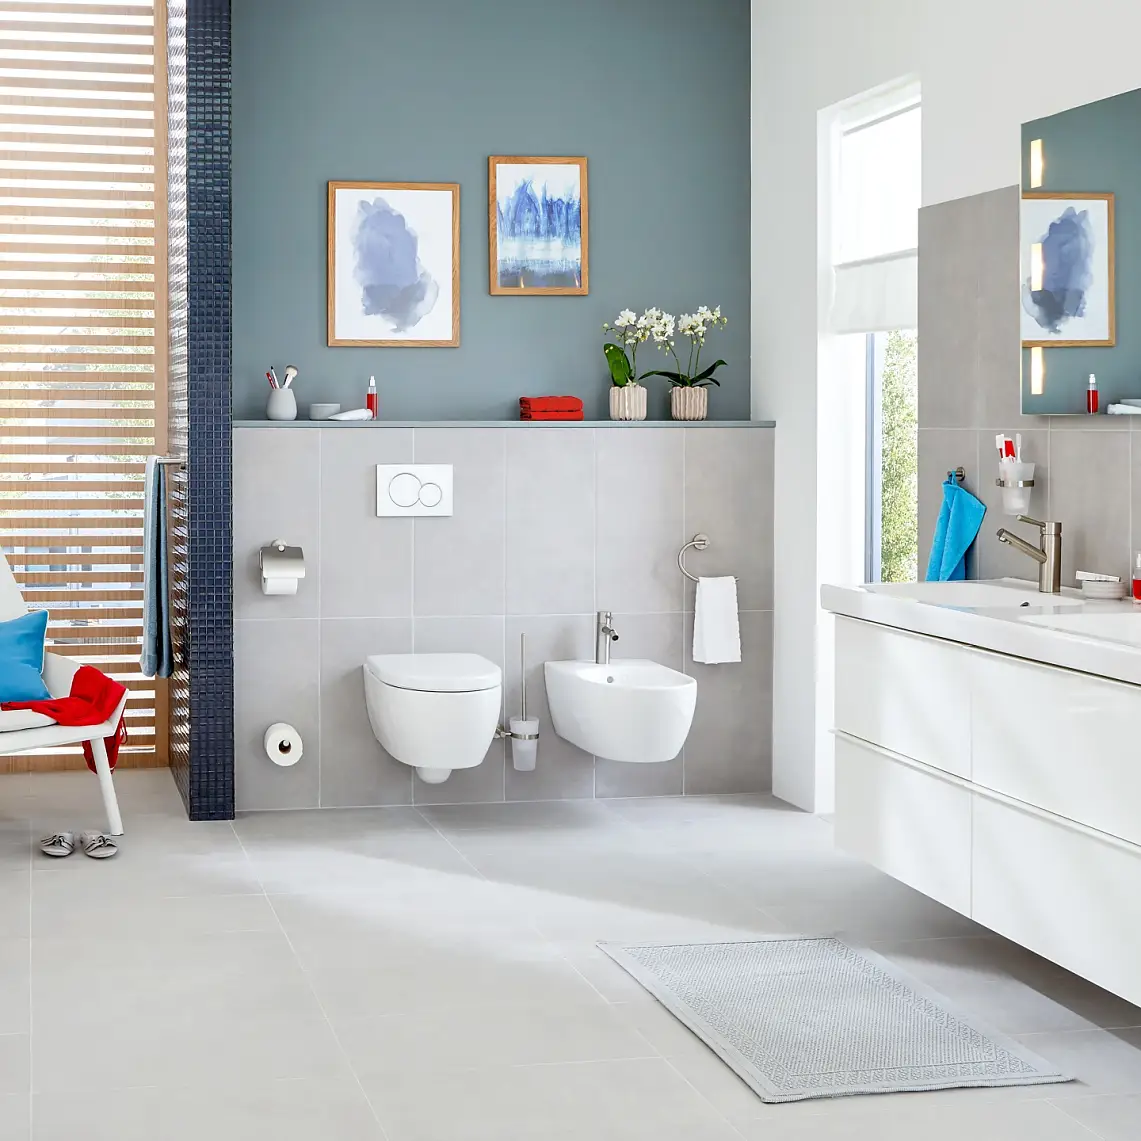 Ontwerpen om de exclusieve uitstraling van jouw badkamer te perfectioneren.